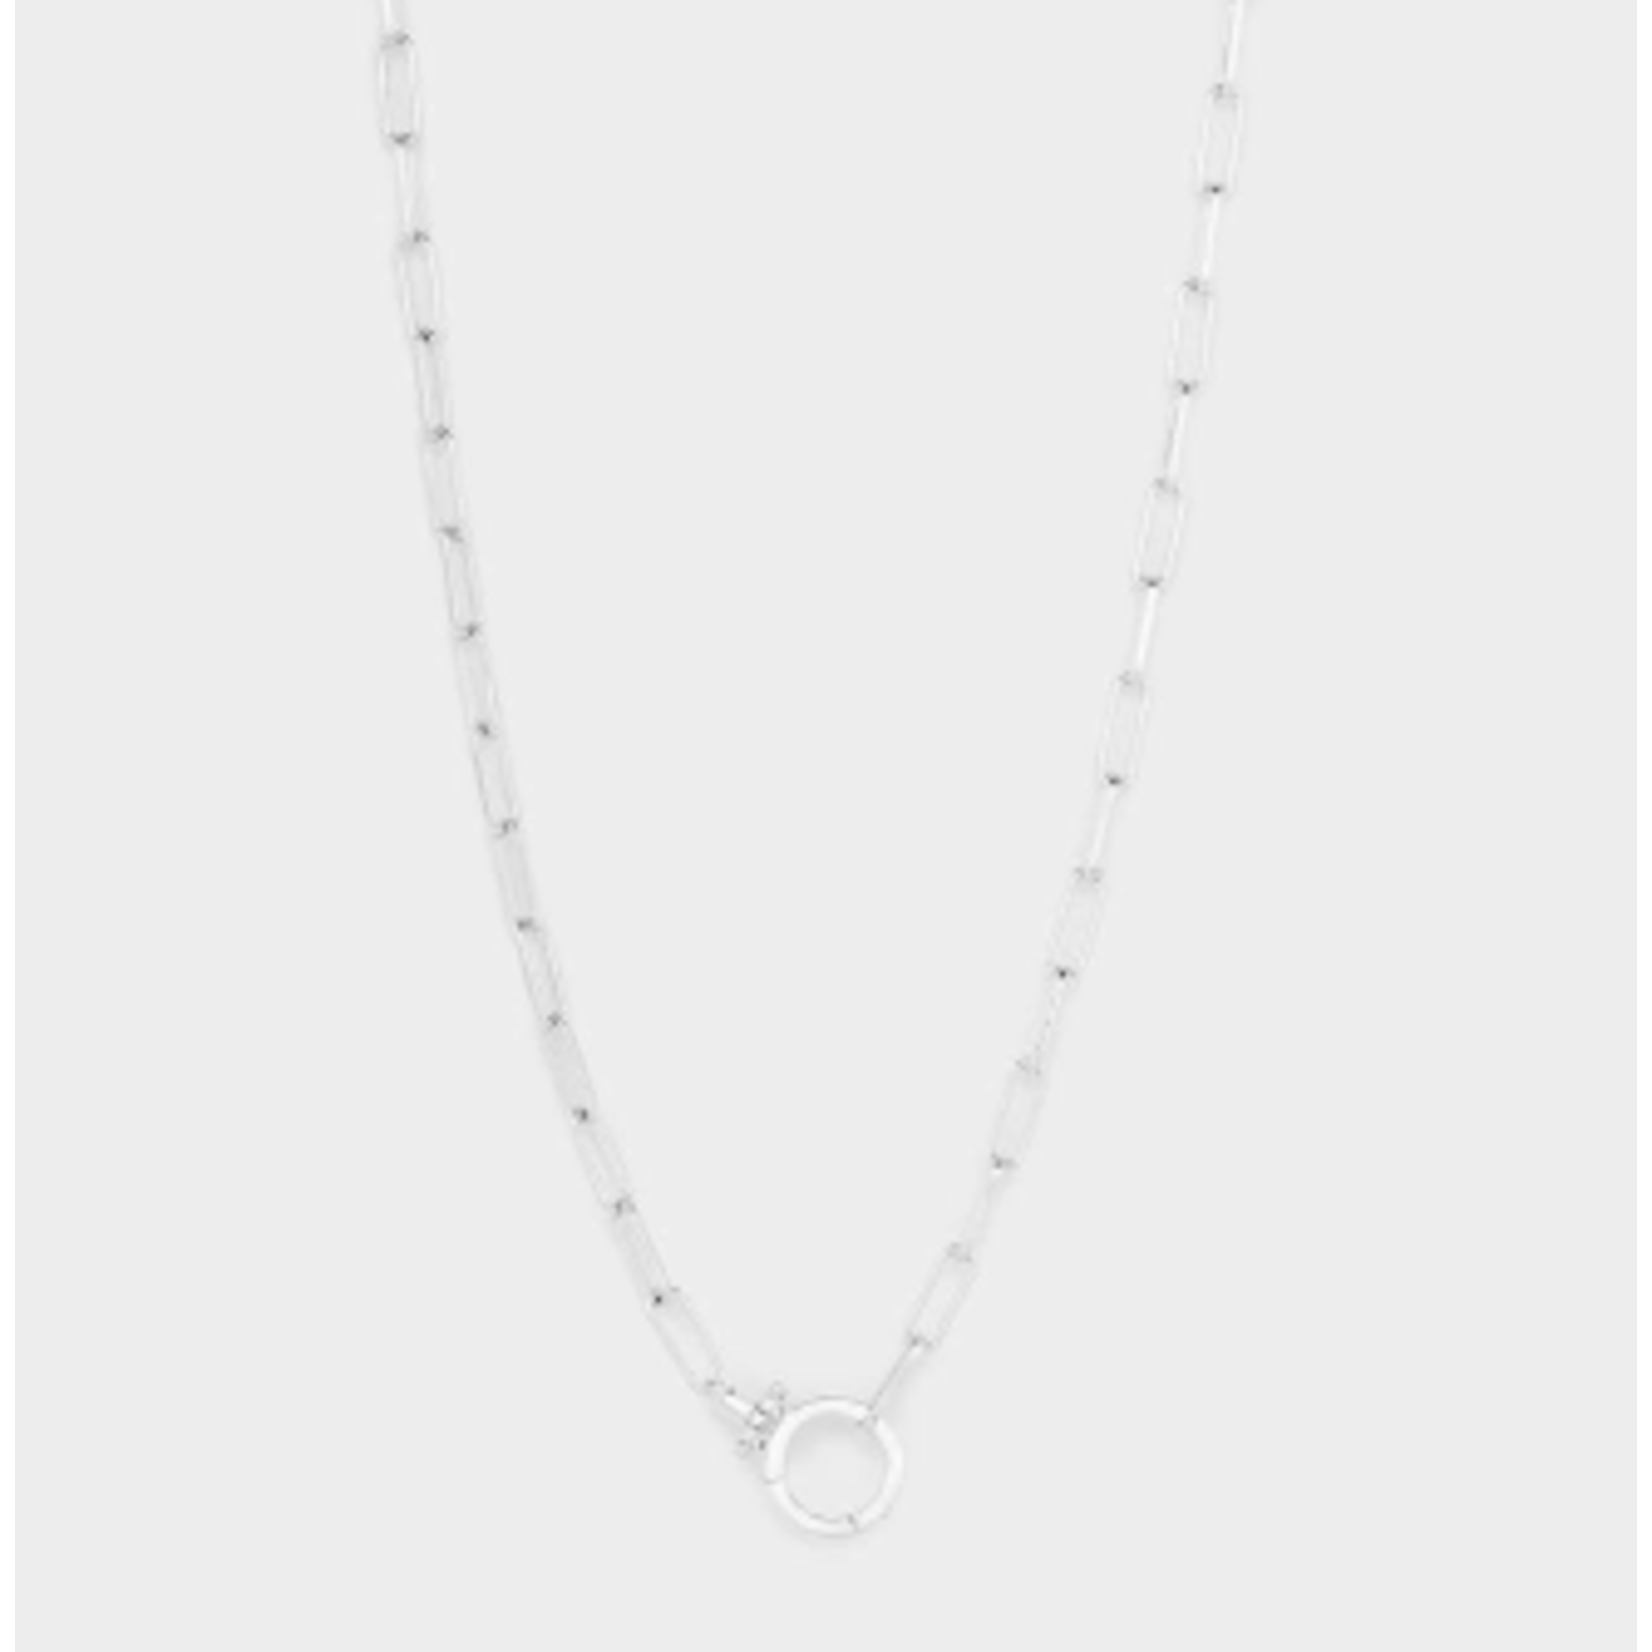 Gorjana Parker Necklace - silver